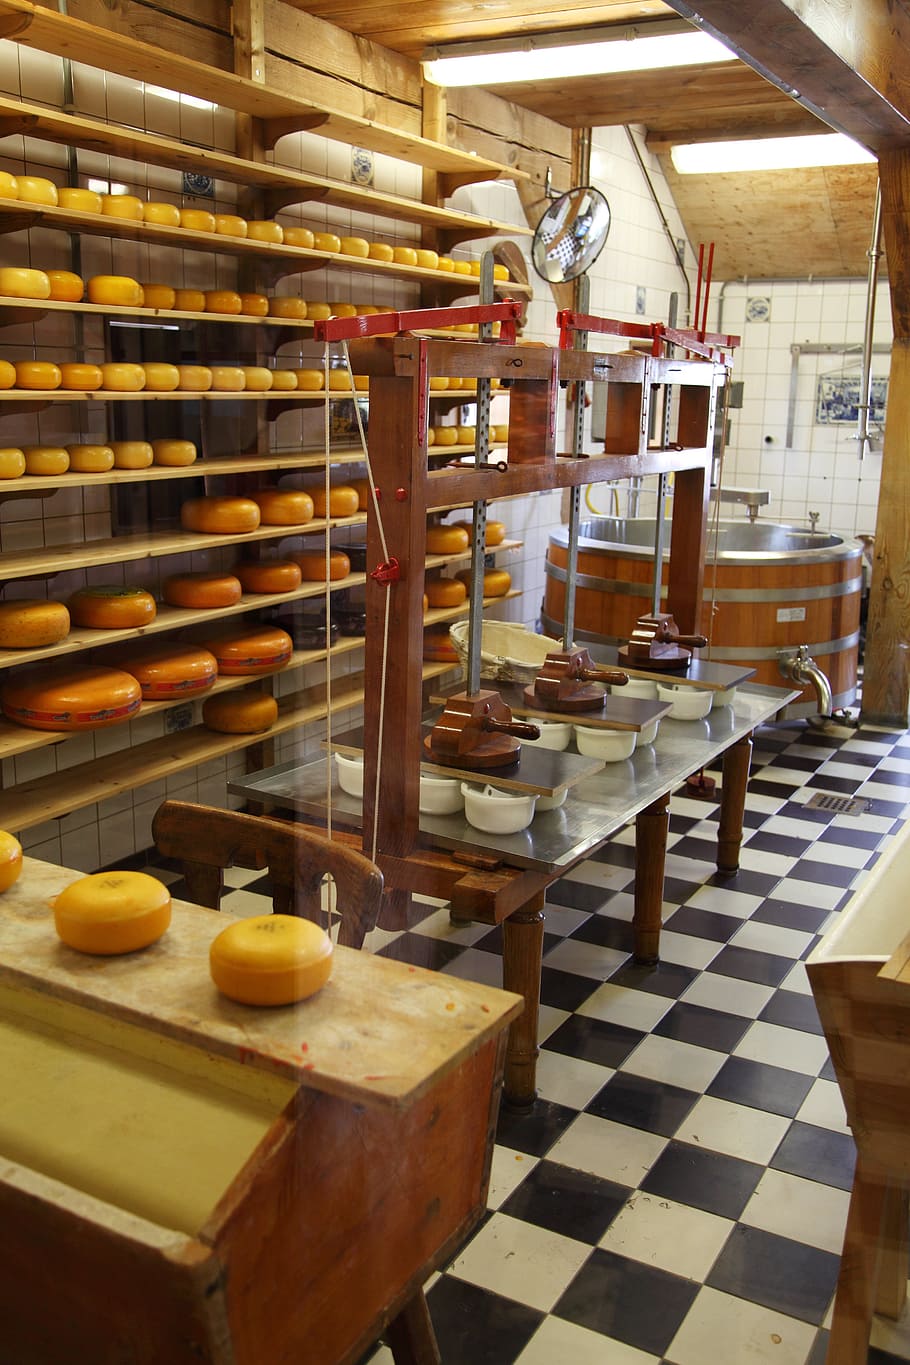 lote de panes variados, queso, limpio, comercial, lácteos, equipos, fábrica, alimentos, industrial, industria